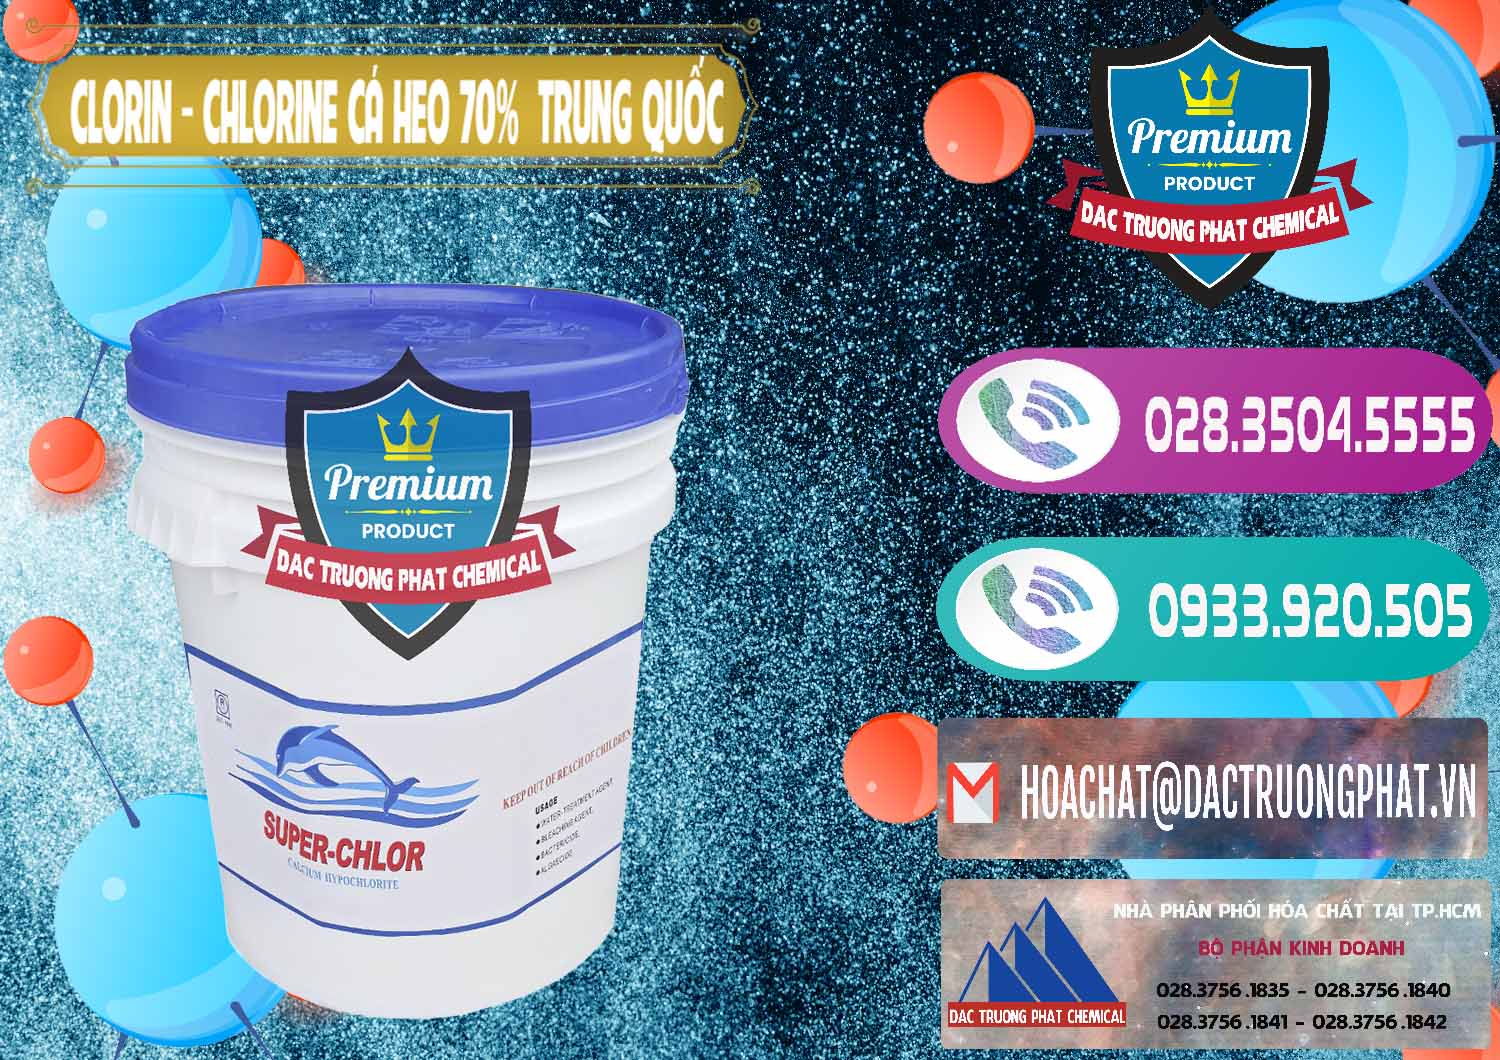 Nơi chuyên bán - cung cấp Clorin - Chlorine Cá Heo 70% Super Chlor Nắp Xanh Trung Quốc China - 0209 - Đơn vị cung cấp và bán hóa chất tại TP.HCM - hoachatxulynuoc.com